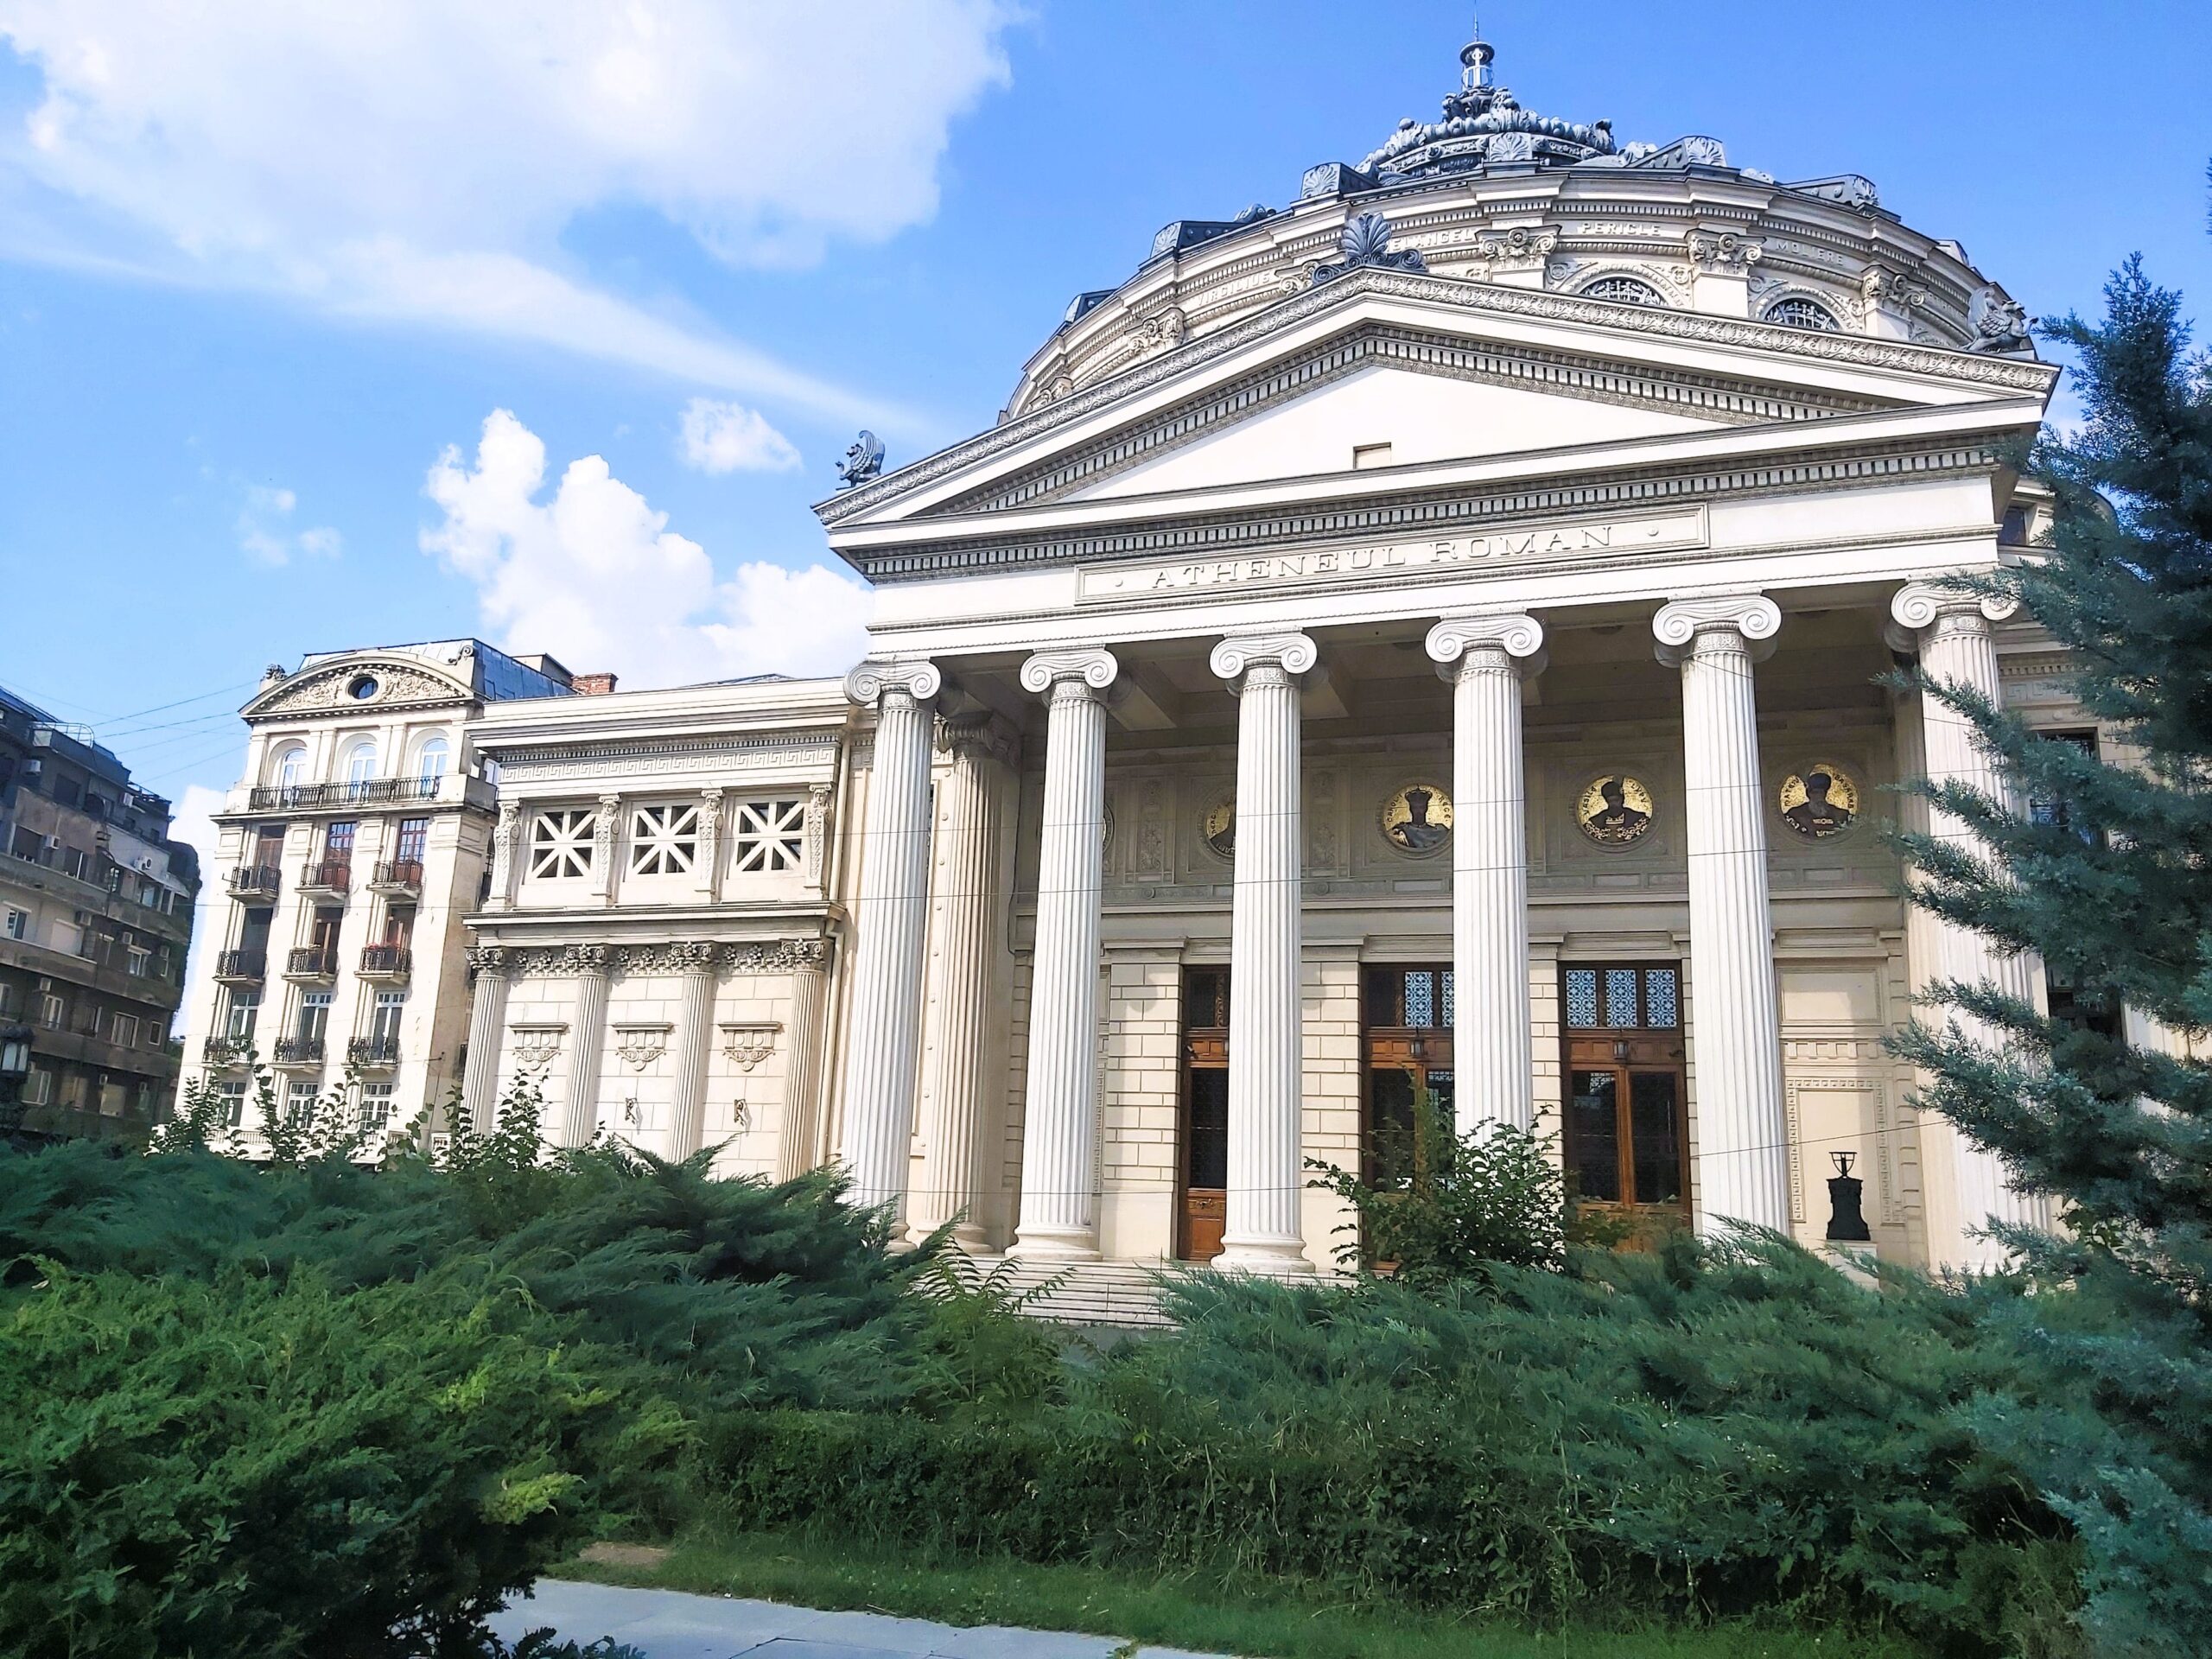 The Ateneul Român (the Romanian Athenaeum) in București, Romania